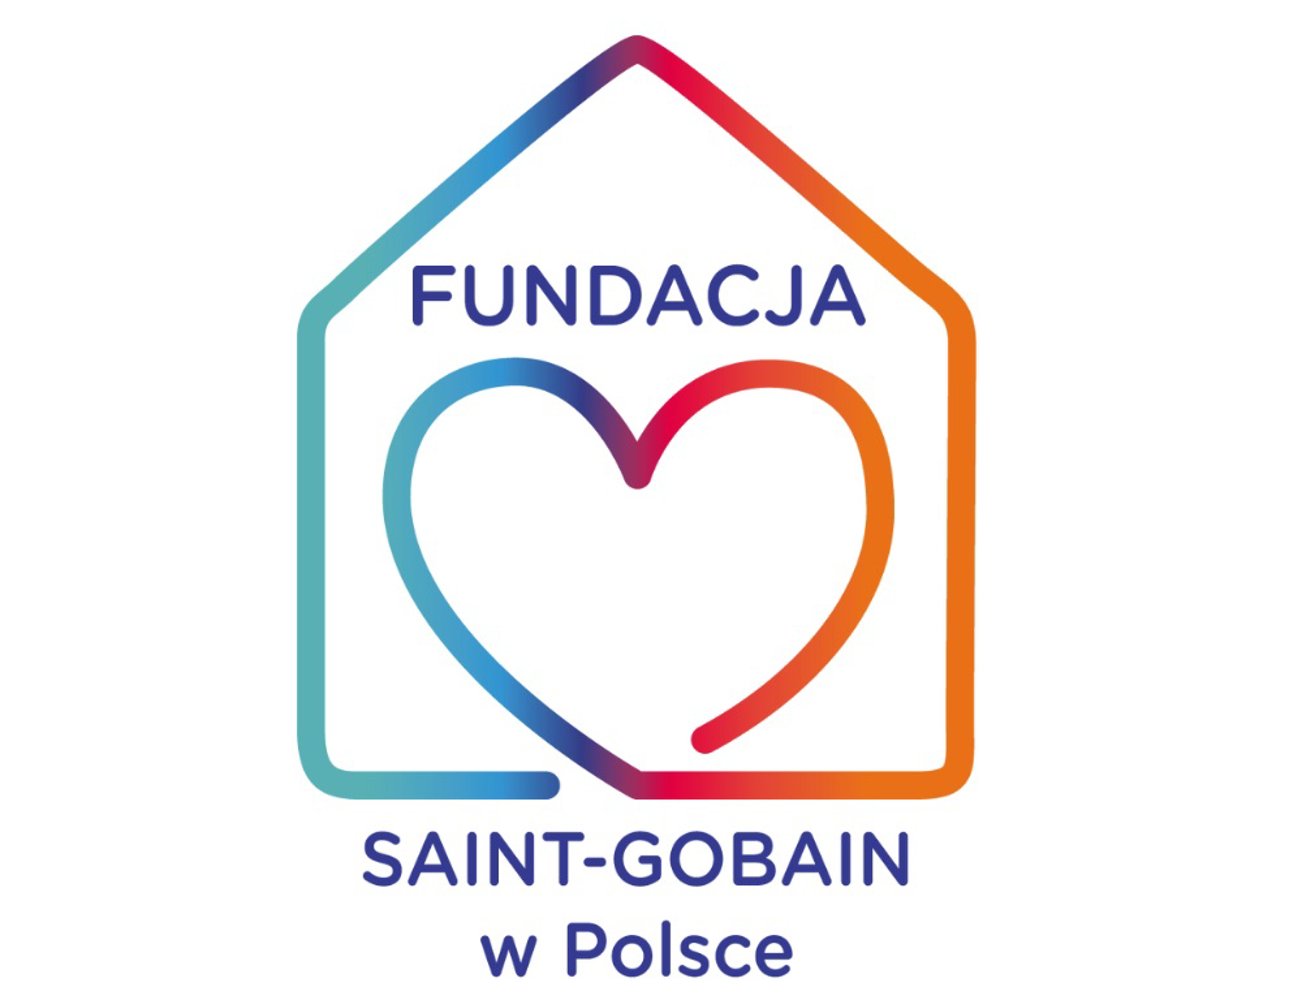 Utworzenie Fundacji Saint-Gobain w Polsce. Działania Saint-Gobain w Polsce na rzecz wsparcia uchodźców z Ukrainy